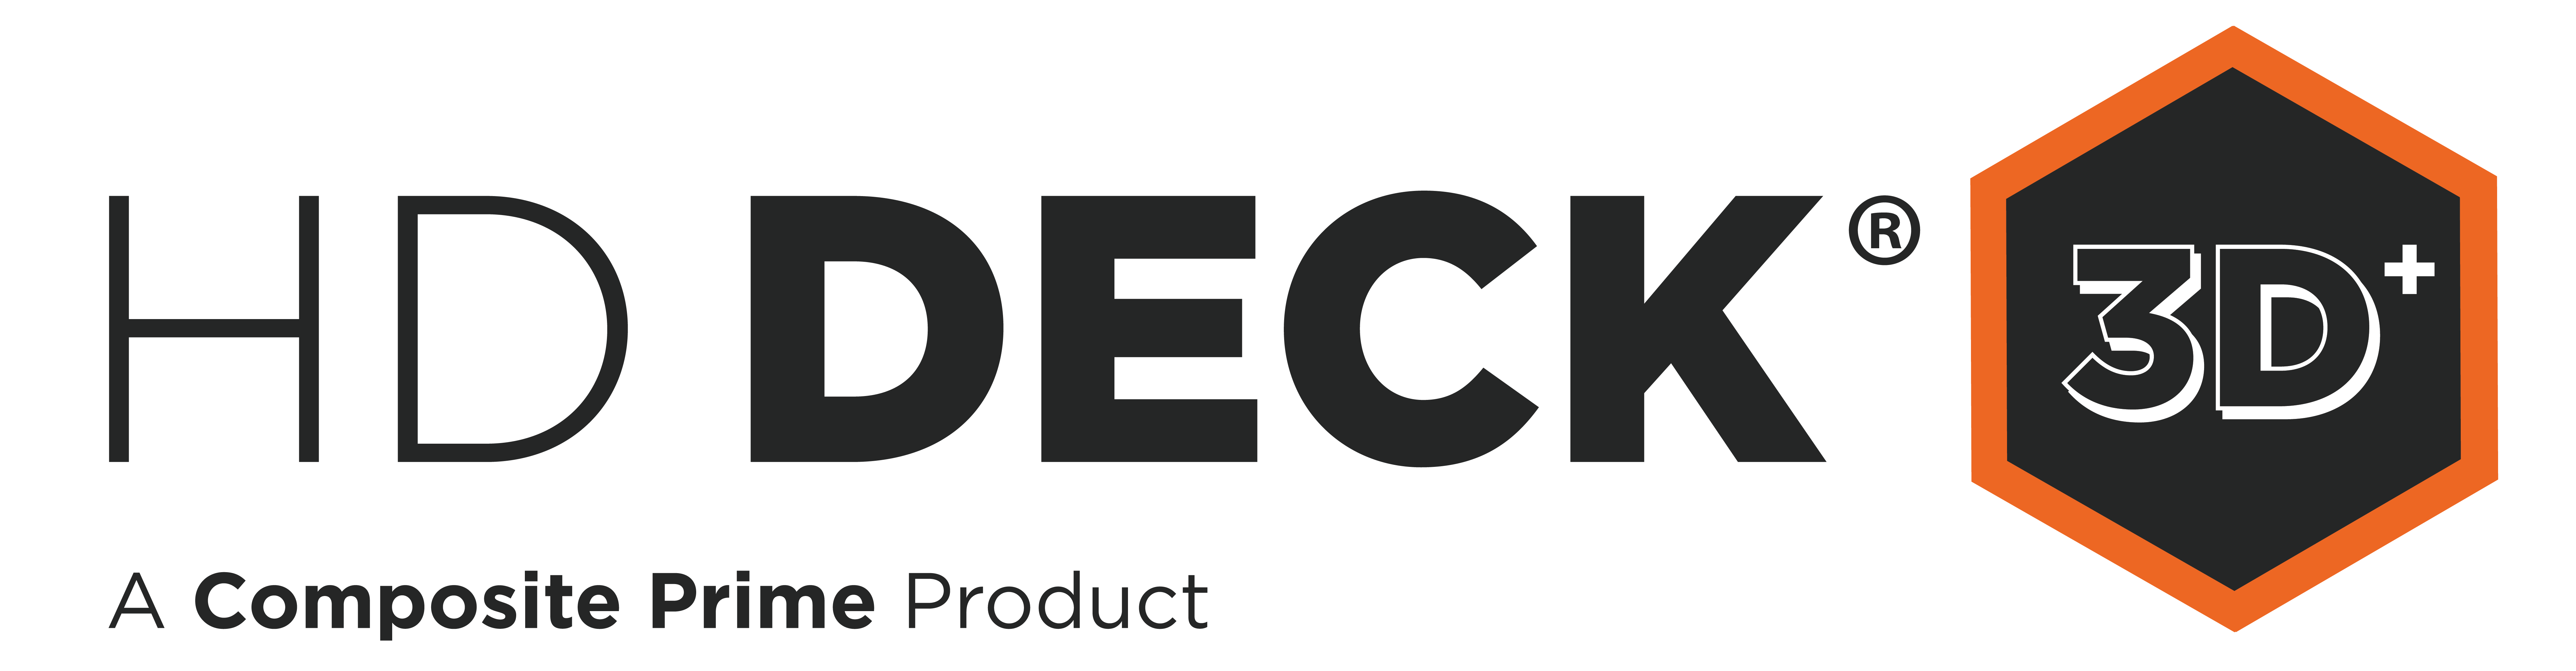 HD_Deck_3D_Plus_ Logo